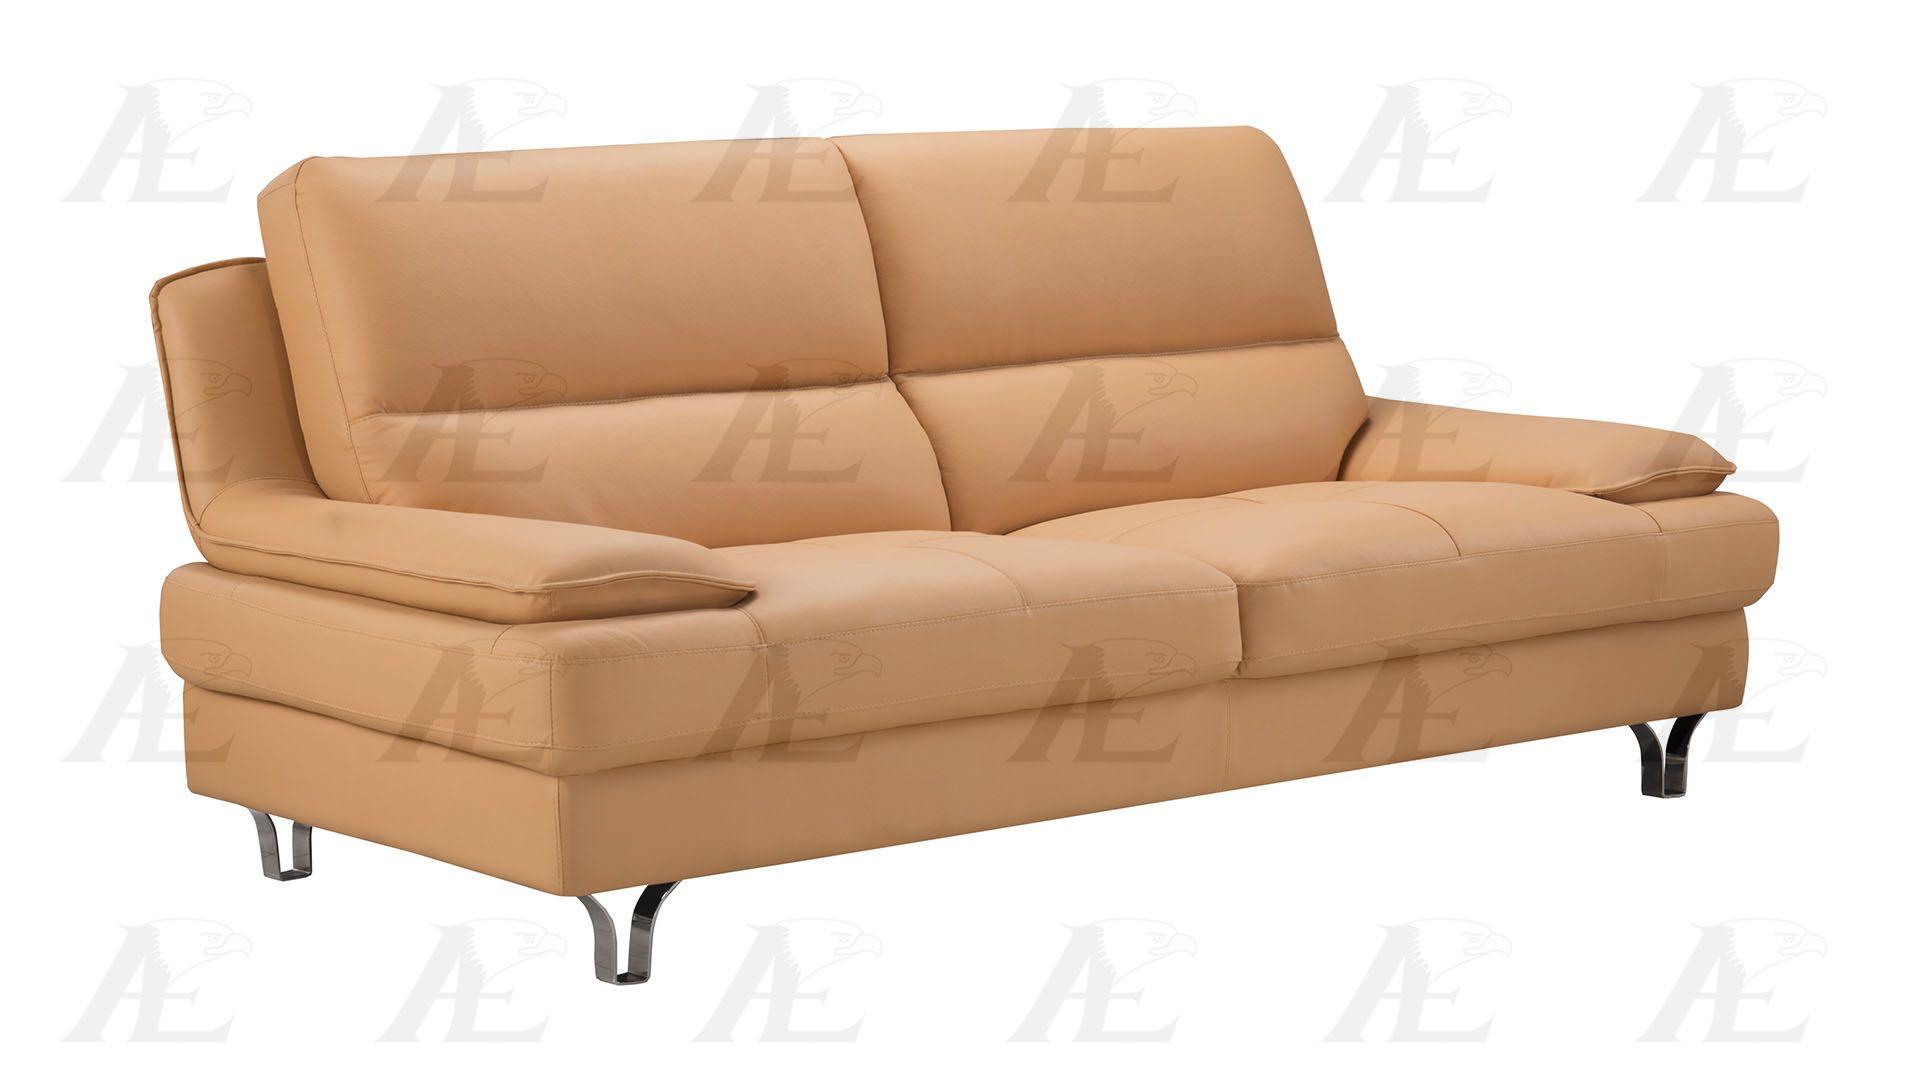 

    
American Eagle Furniture EK-B109-YO Sofa and Loveseat Set Yellow EK-B109-YO Set-2
